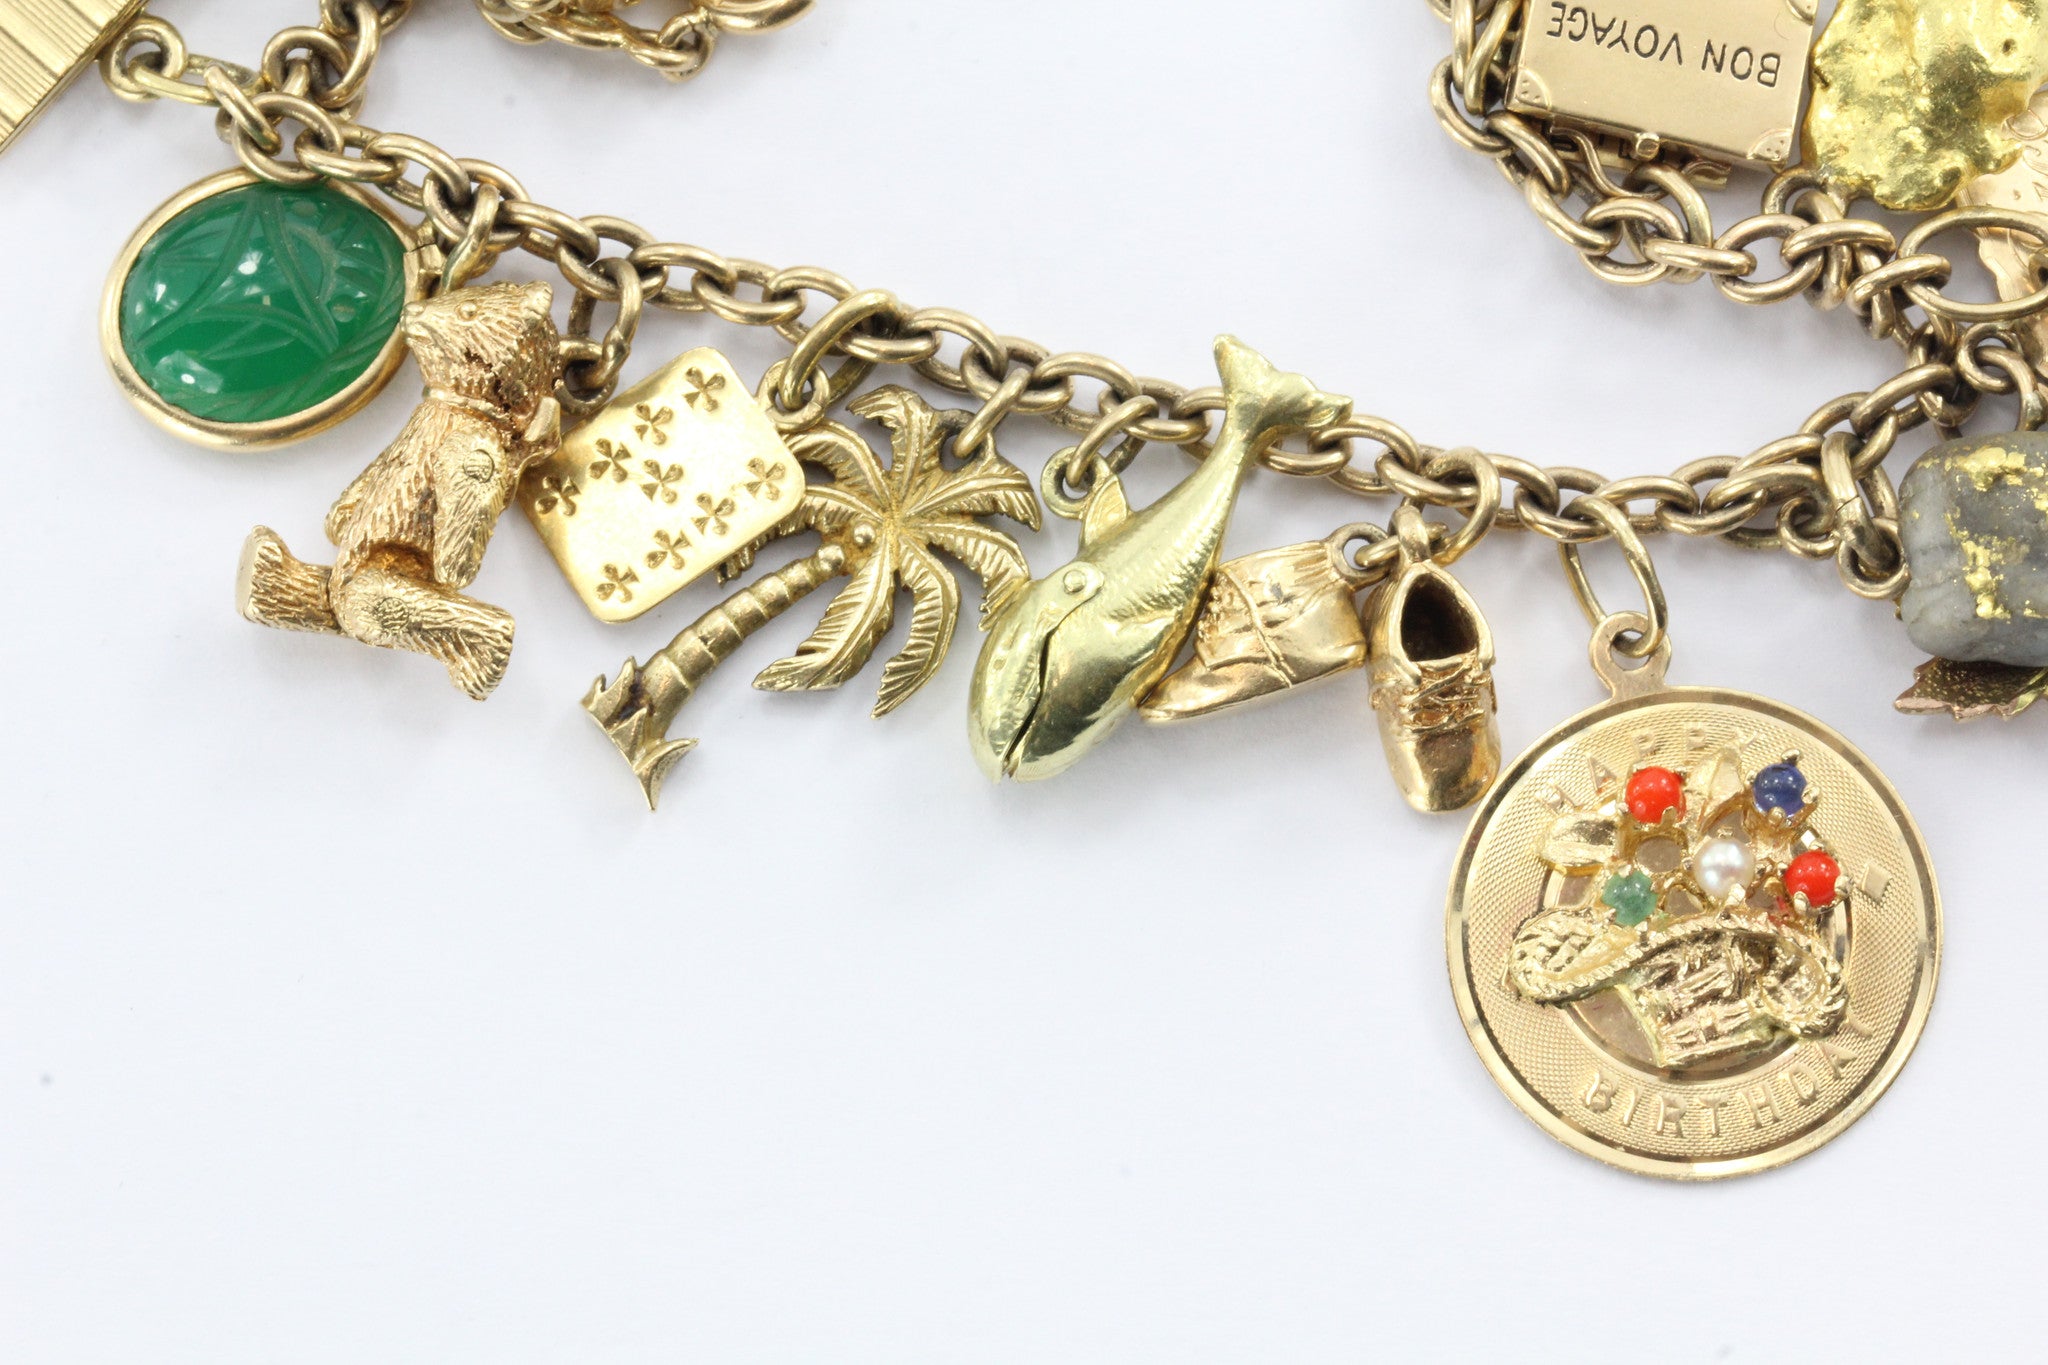 Yellow Gold Charm Bracelet, Jewelry Box Staple.  Tiffany charm bracelet, Gold  charm bracelet, Tiffany jewelry